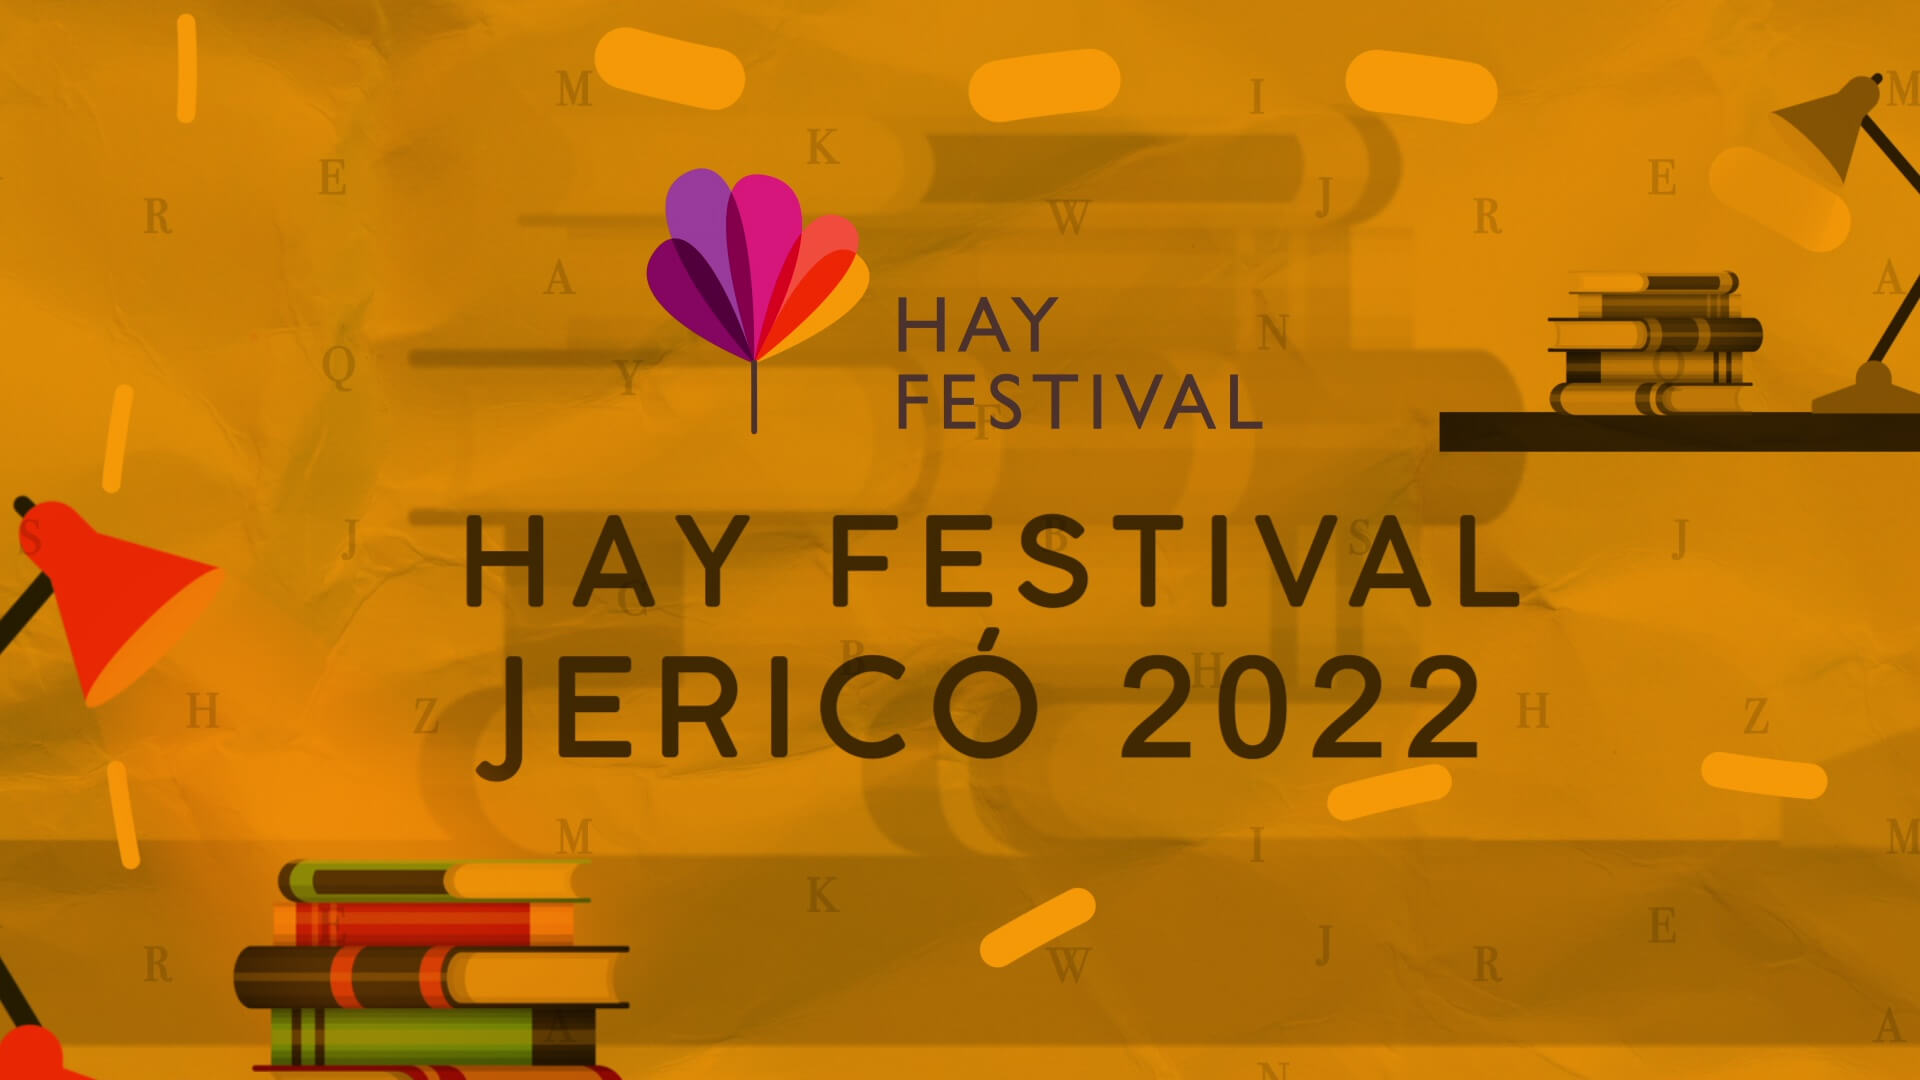 Mañana comienza el Hay Festival en Jericó